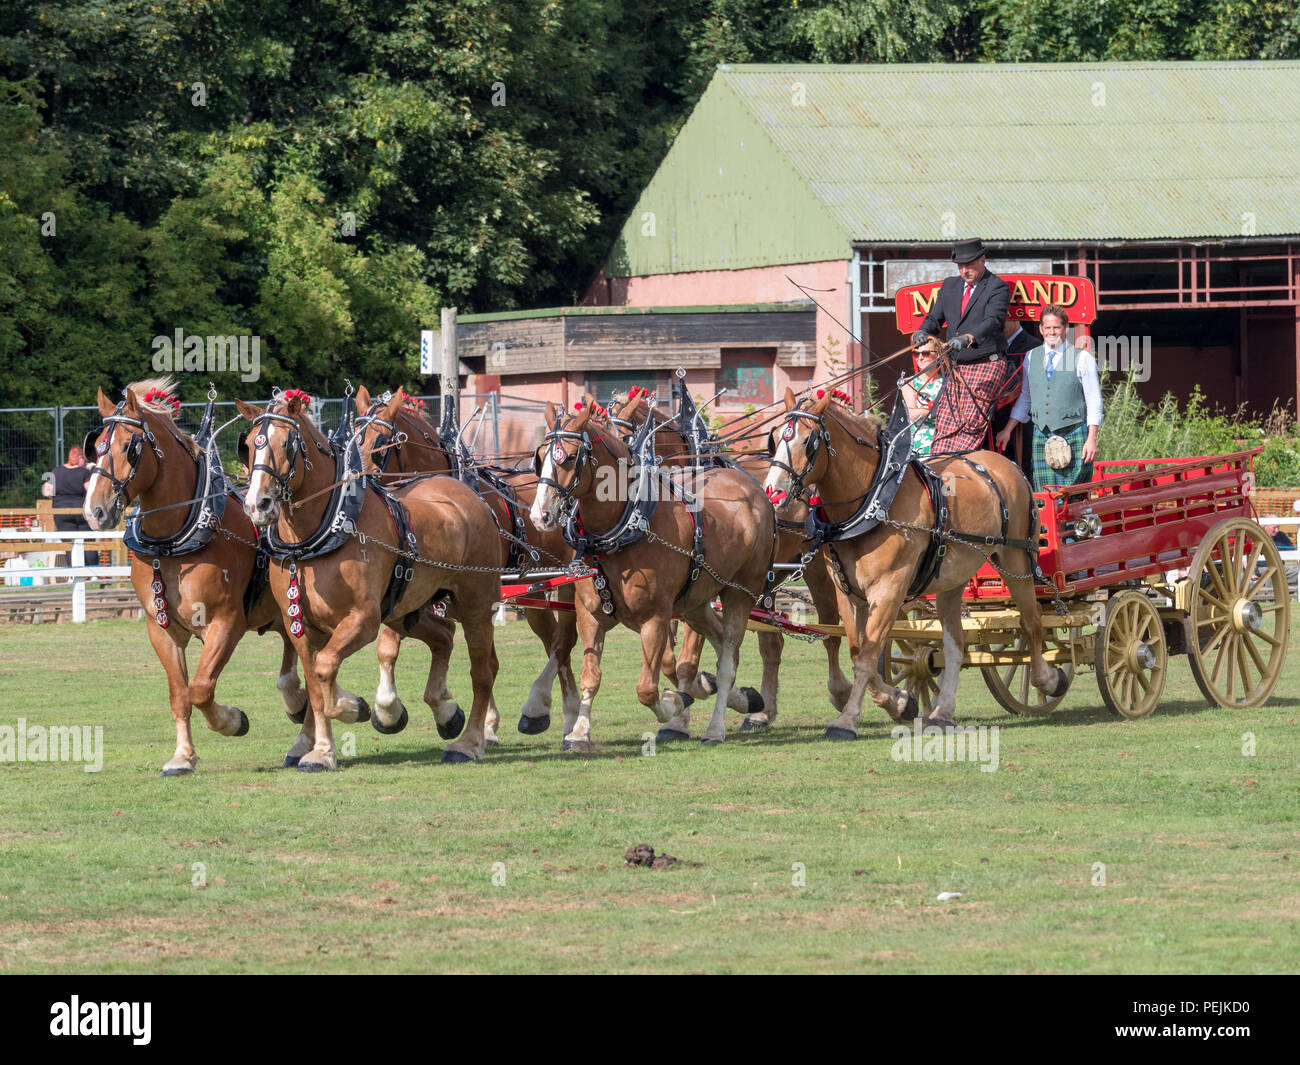 Turriff, Ecosse - Aug 06, 2018 : Affichage des chevaux et les wagons pendant la cheval lourd de participation à l'Exposition agricole Turriff en Ecosse. Banque D'Images